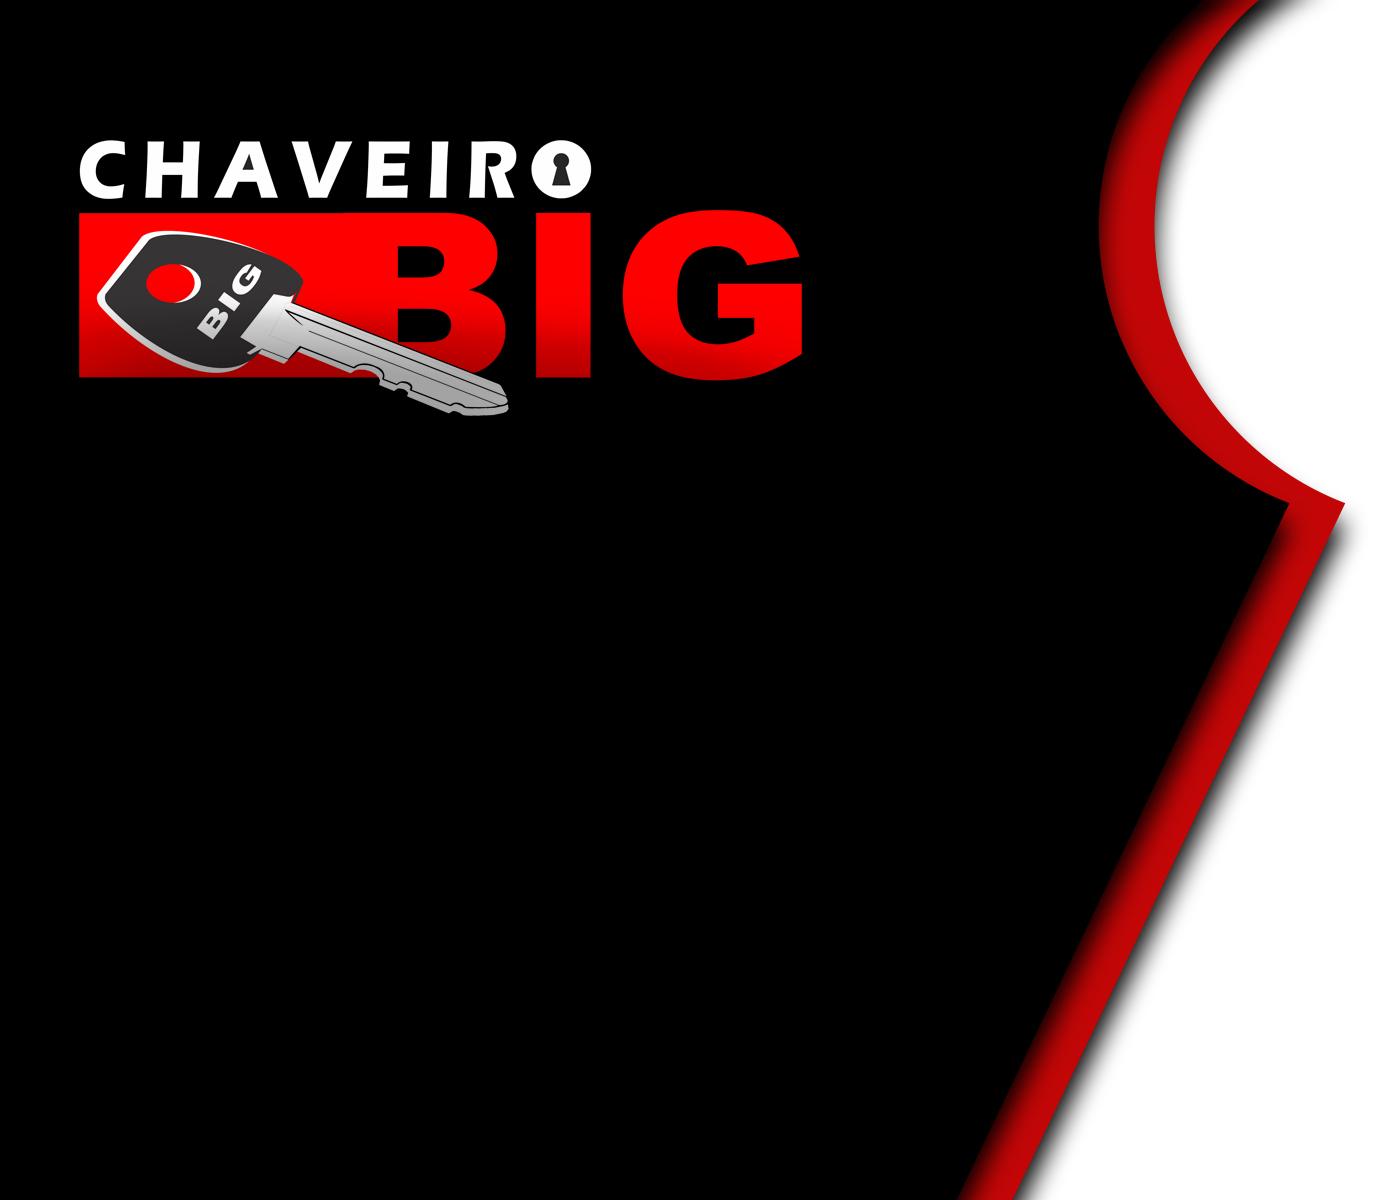 CHAVEIRO BIG